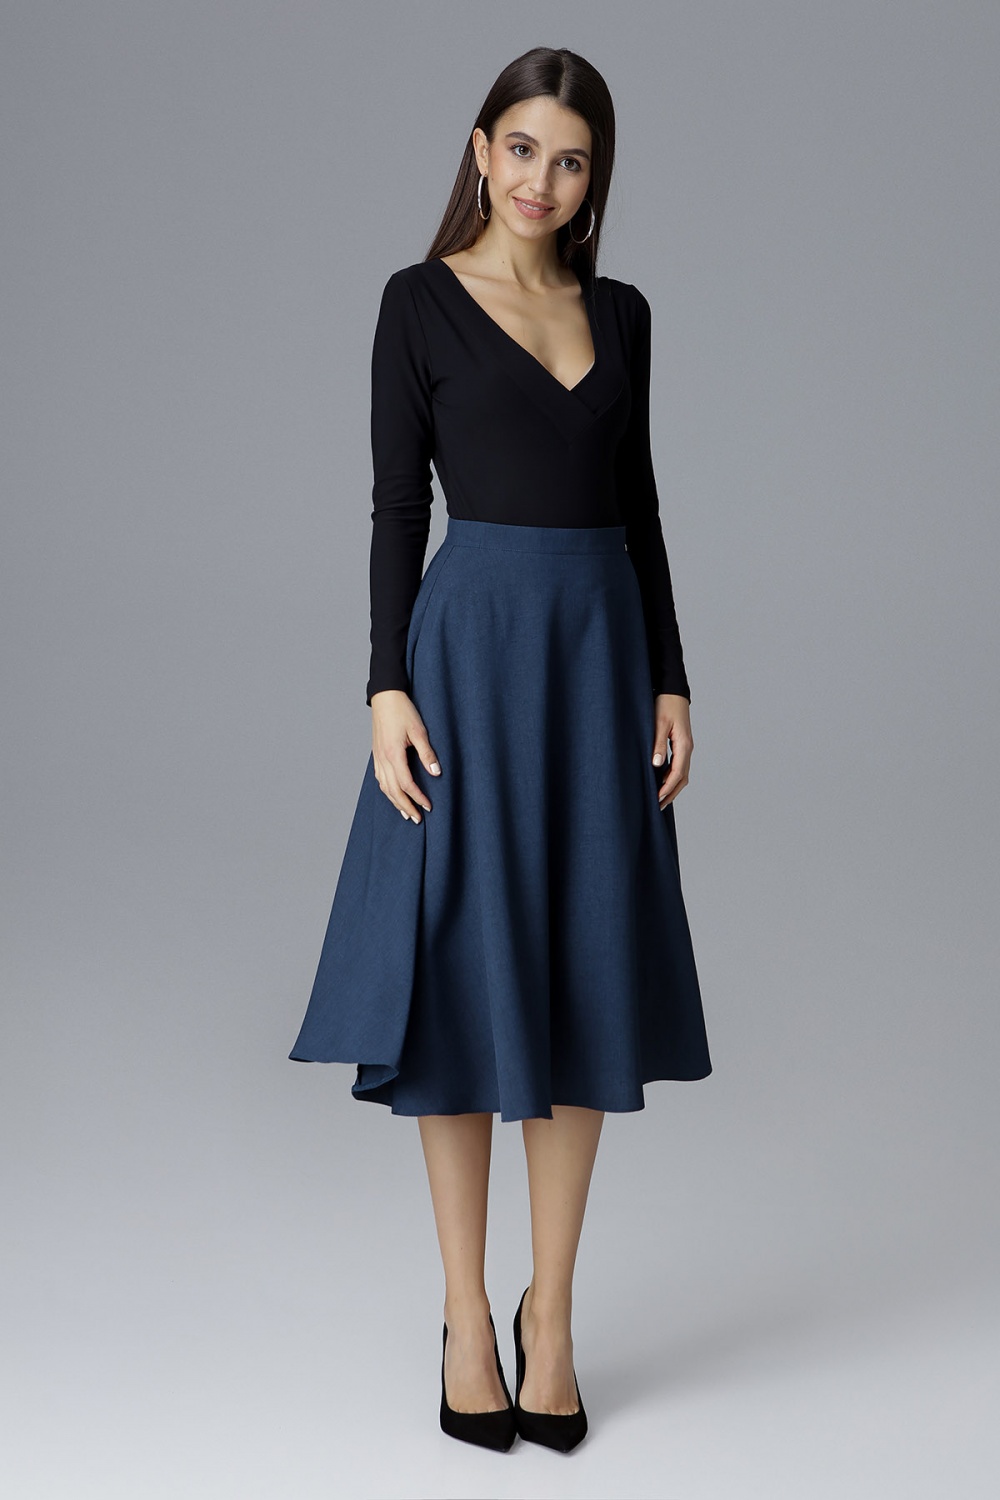  Skirt model 126036 Figl  navy blue